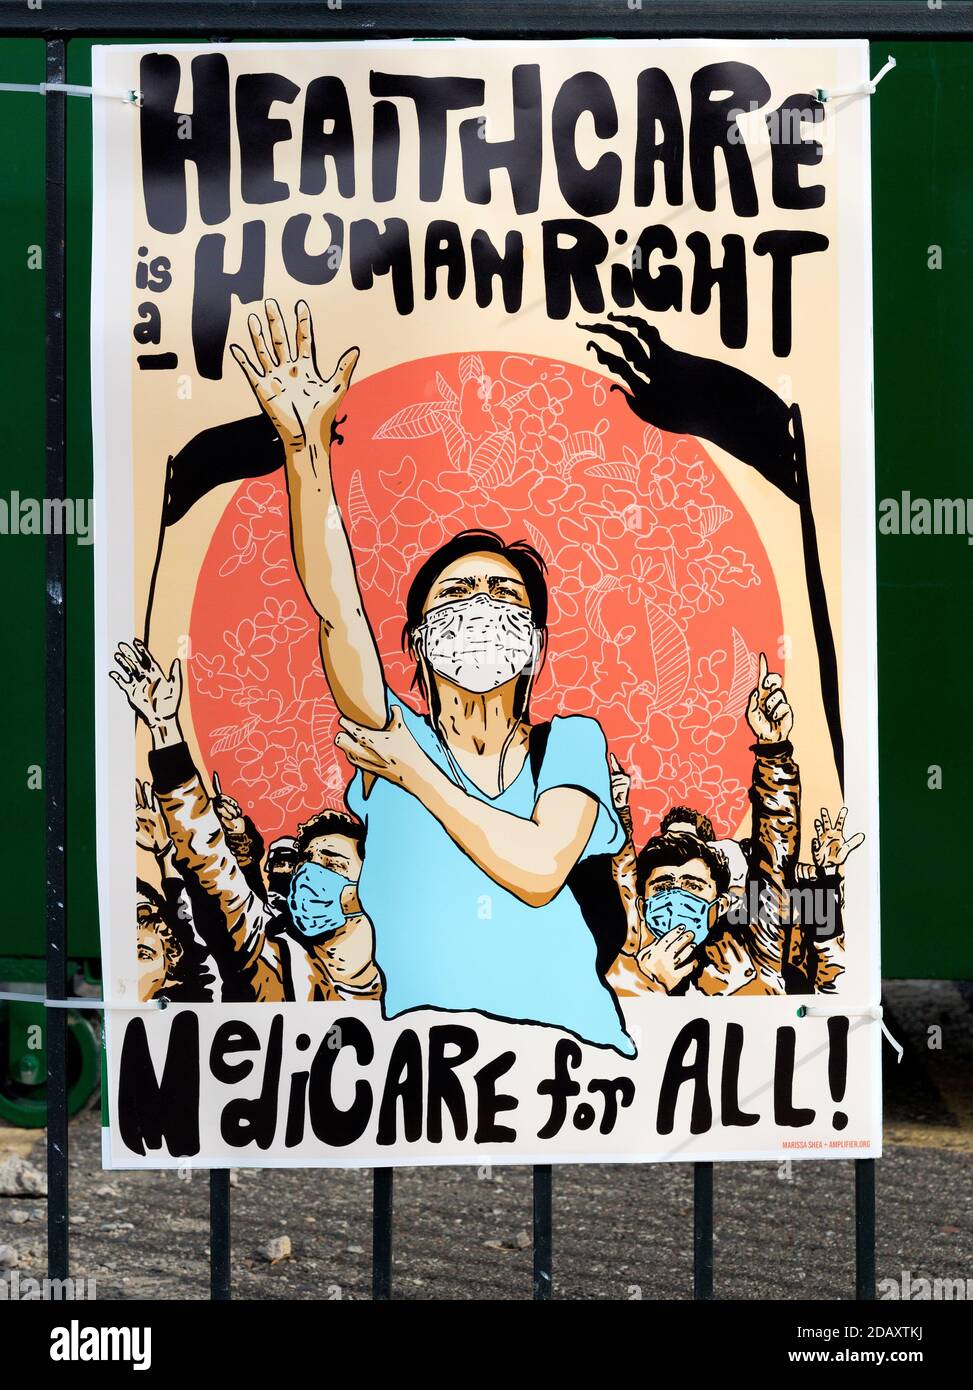 Ein bebildertes Poster, das Menschen mit Gesichtsmasken zeigt - Gesundheitswesen Ist ein Menschenrecht und Medicare für alle Slogans Stockfoto